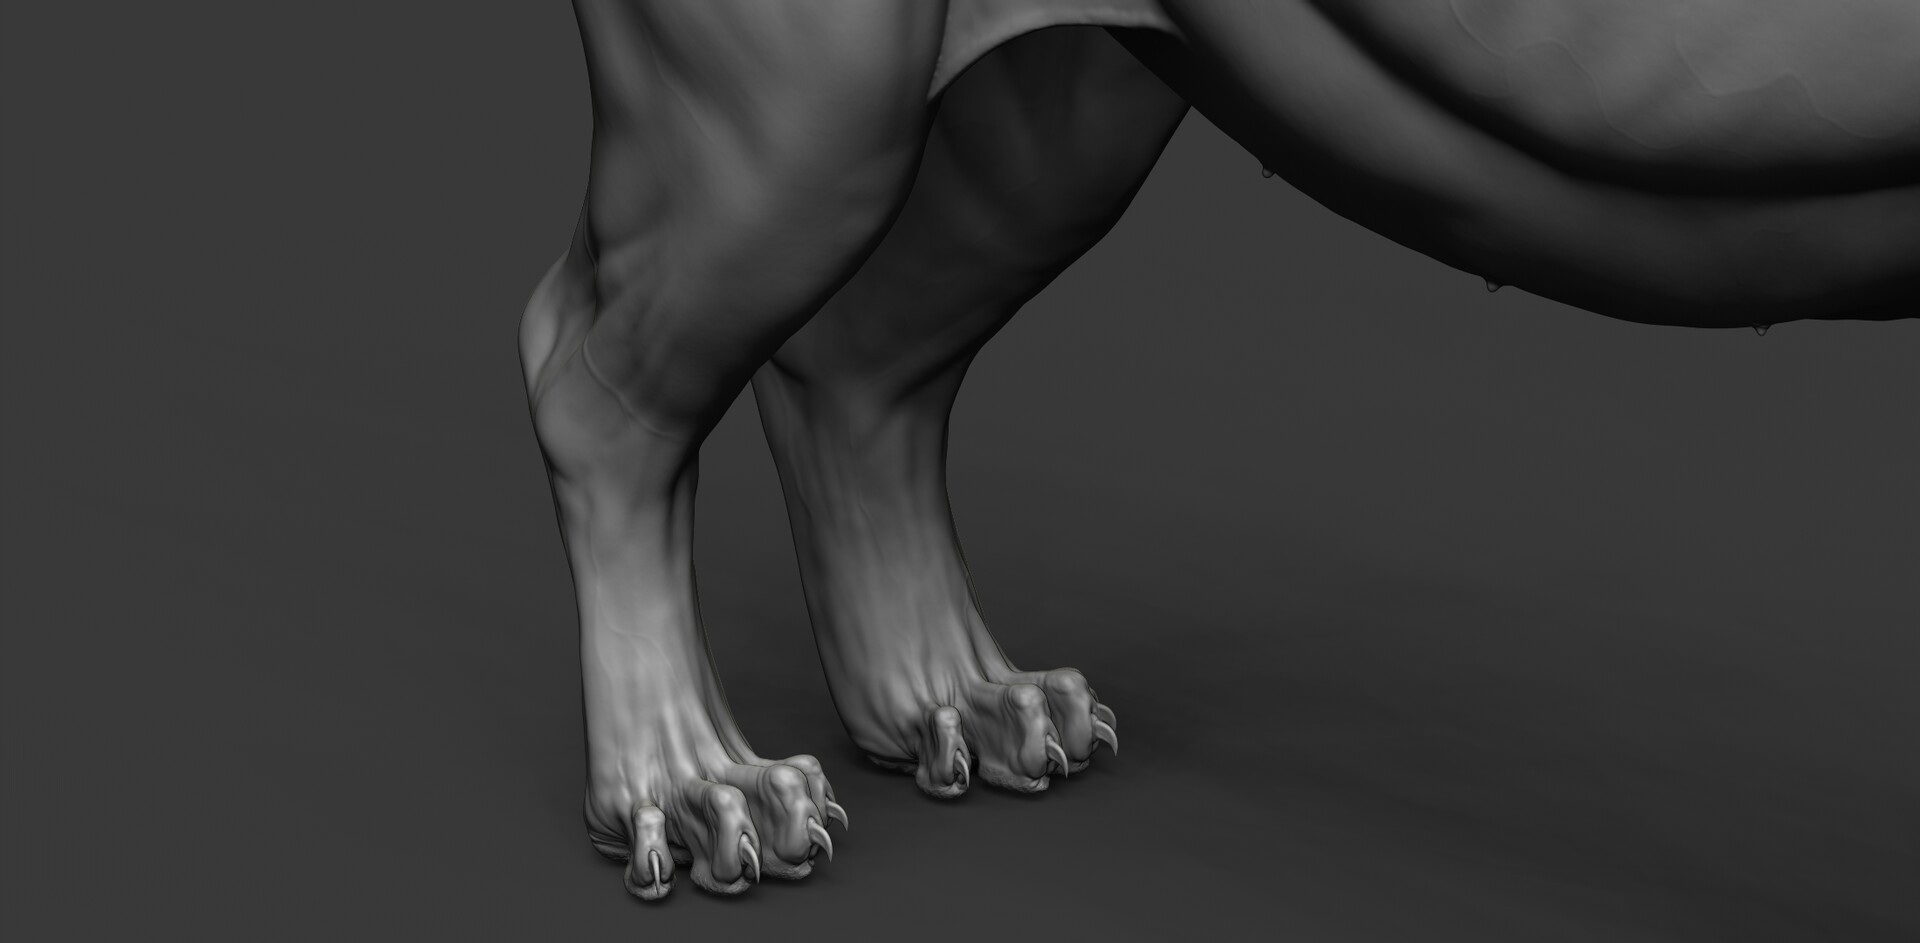 Mature Cougar Feet